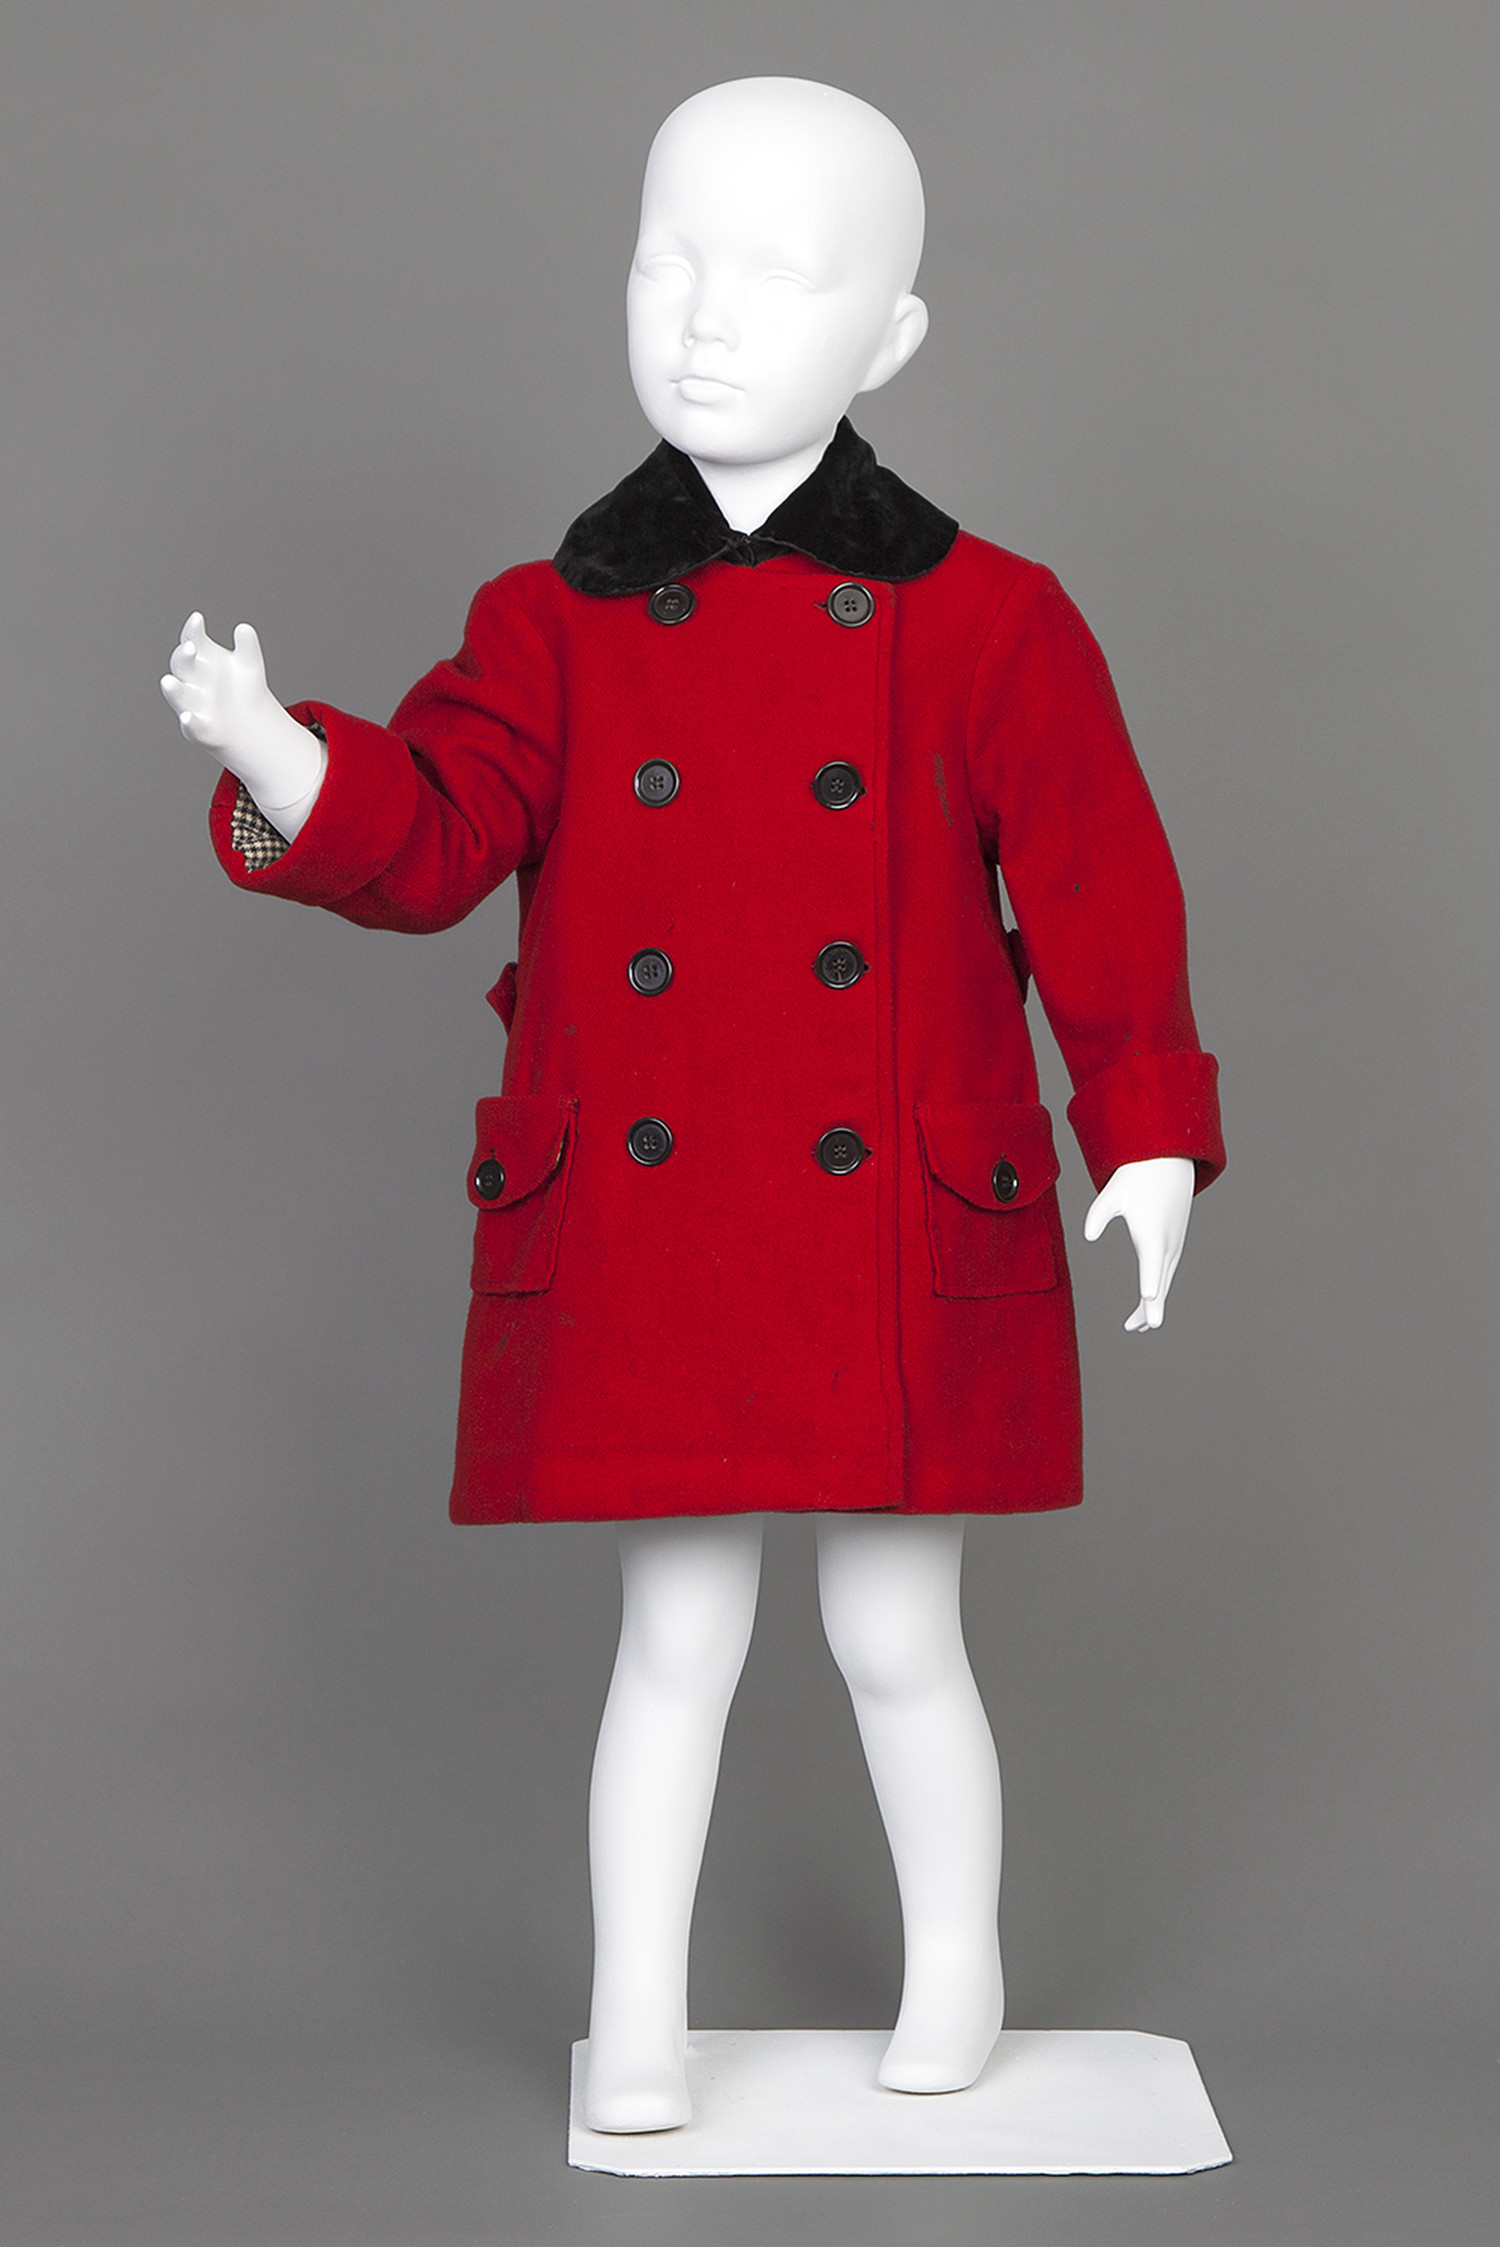 Child's red coat